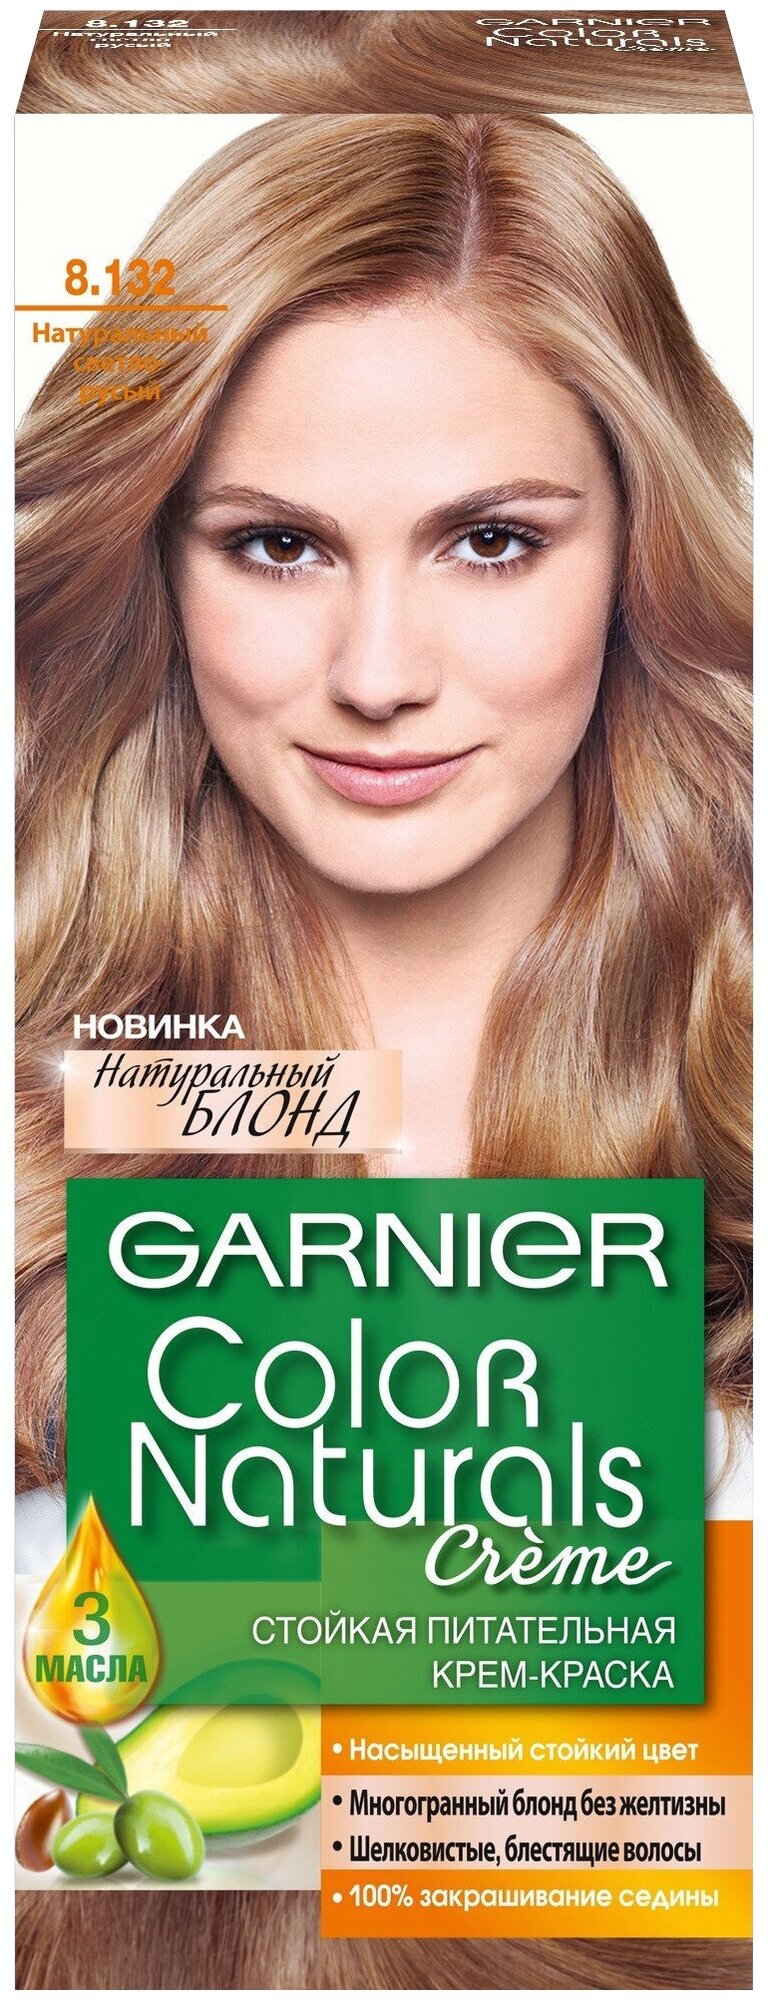 Крем-краска для волос Garnier Color Naturals песчаный берег тон 8.1, 112 мл - фото №3